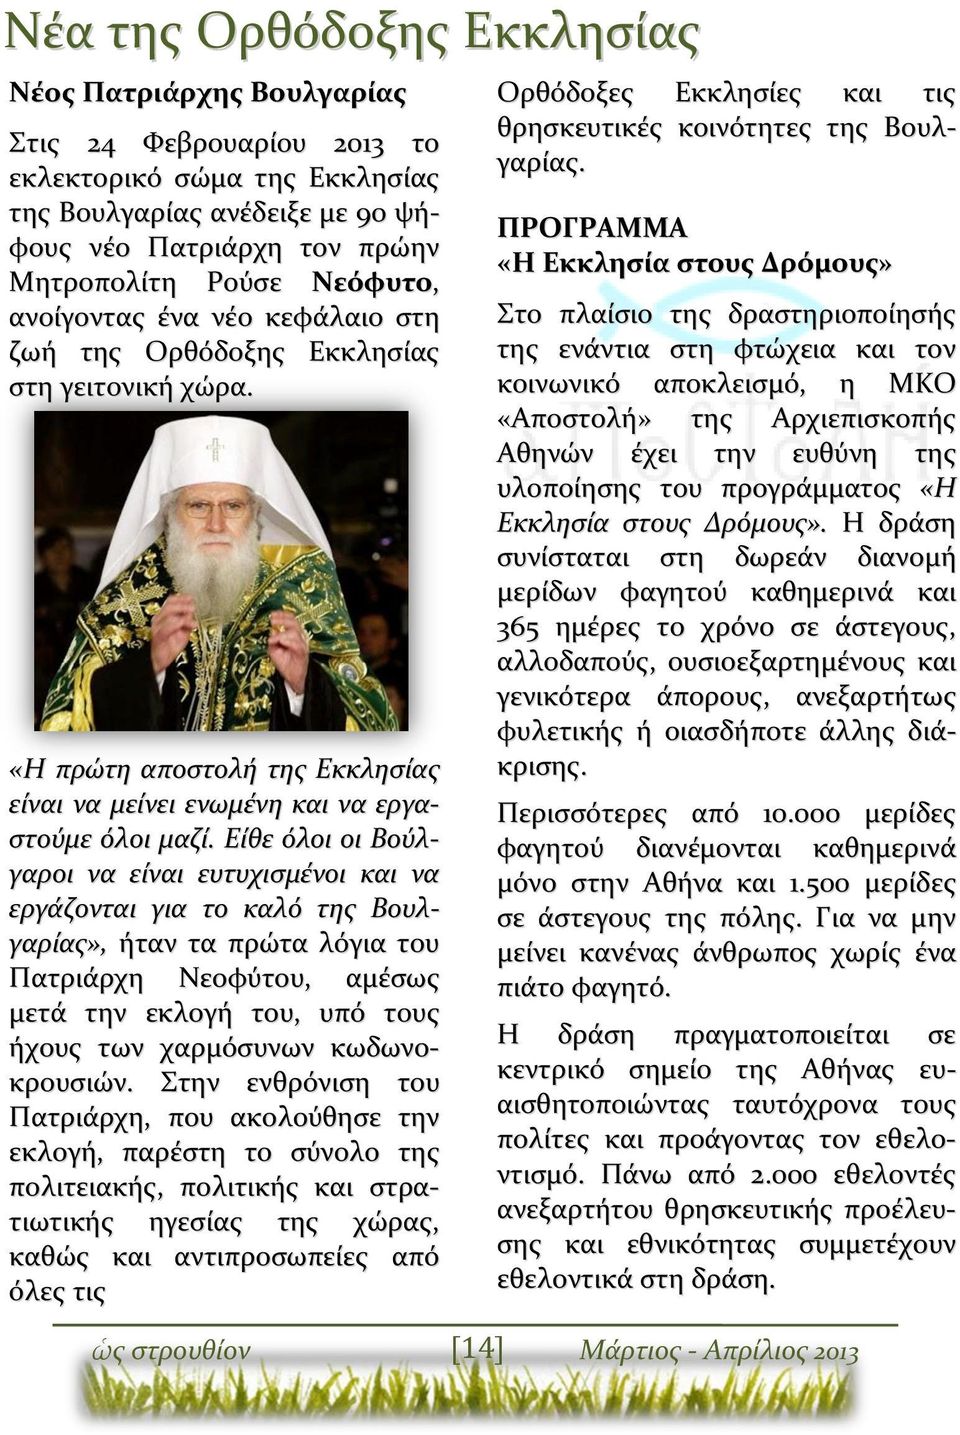 Είθε όλοι οι Βούλγαροι να είναι ευτυχισμένοι και να εργάζονται για το καλό της Βουλγαρίας», ήταν τα πρώτα λόγια του Πατριάρχη Νεοφύτου, αμέσως μετά την εκλογή του, υπό τους ήχους των χαρμόσυνων